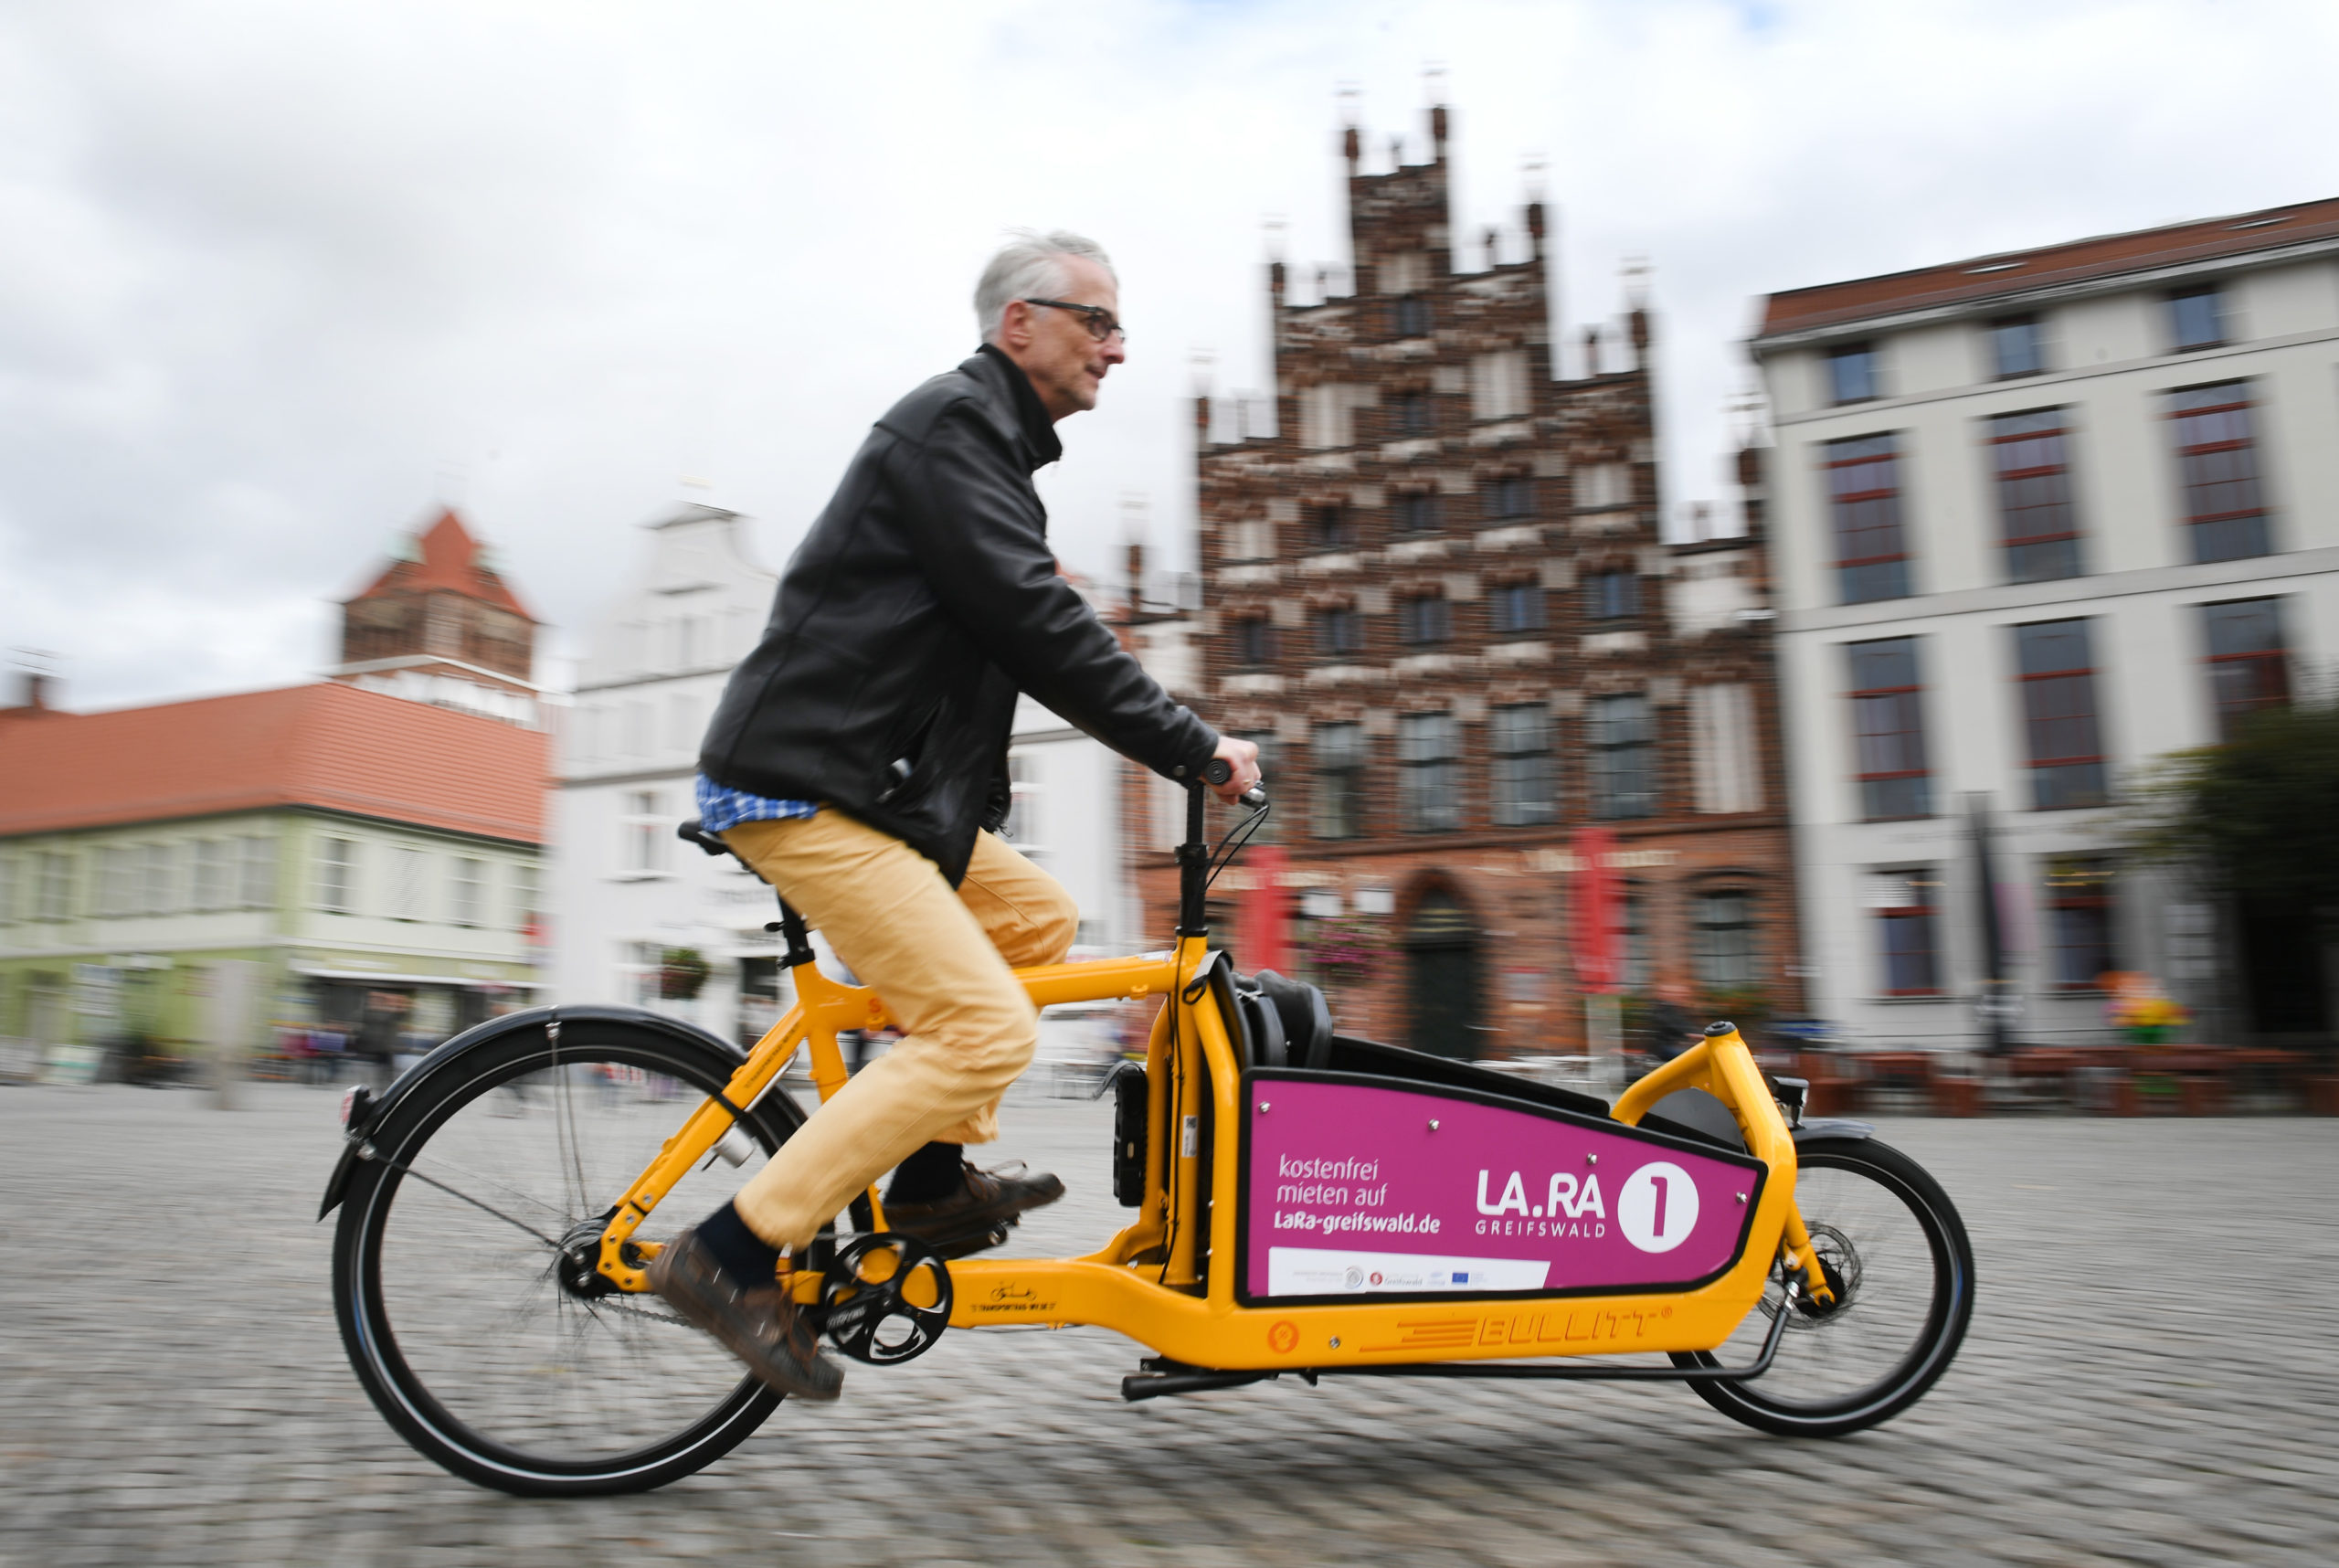 Mechelen introduces first shared cargo e-bikes